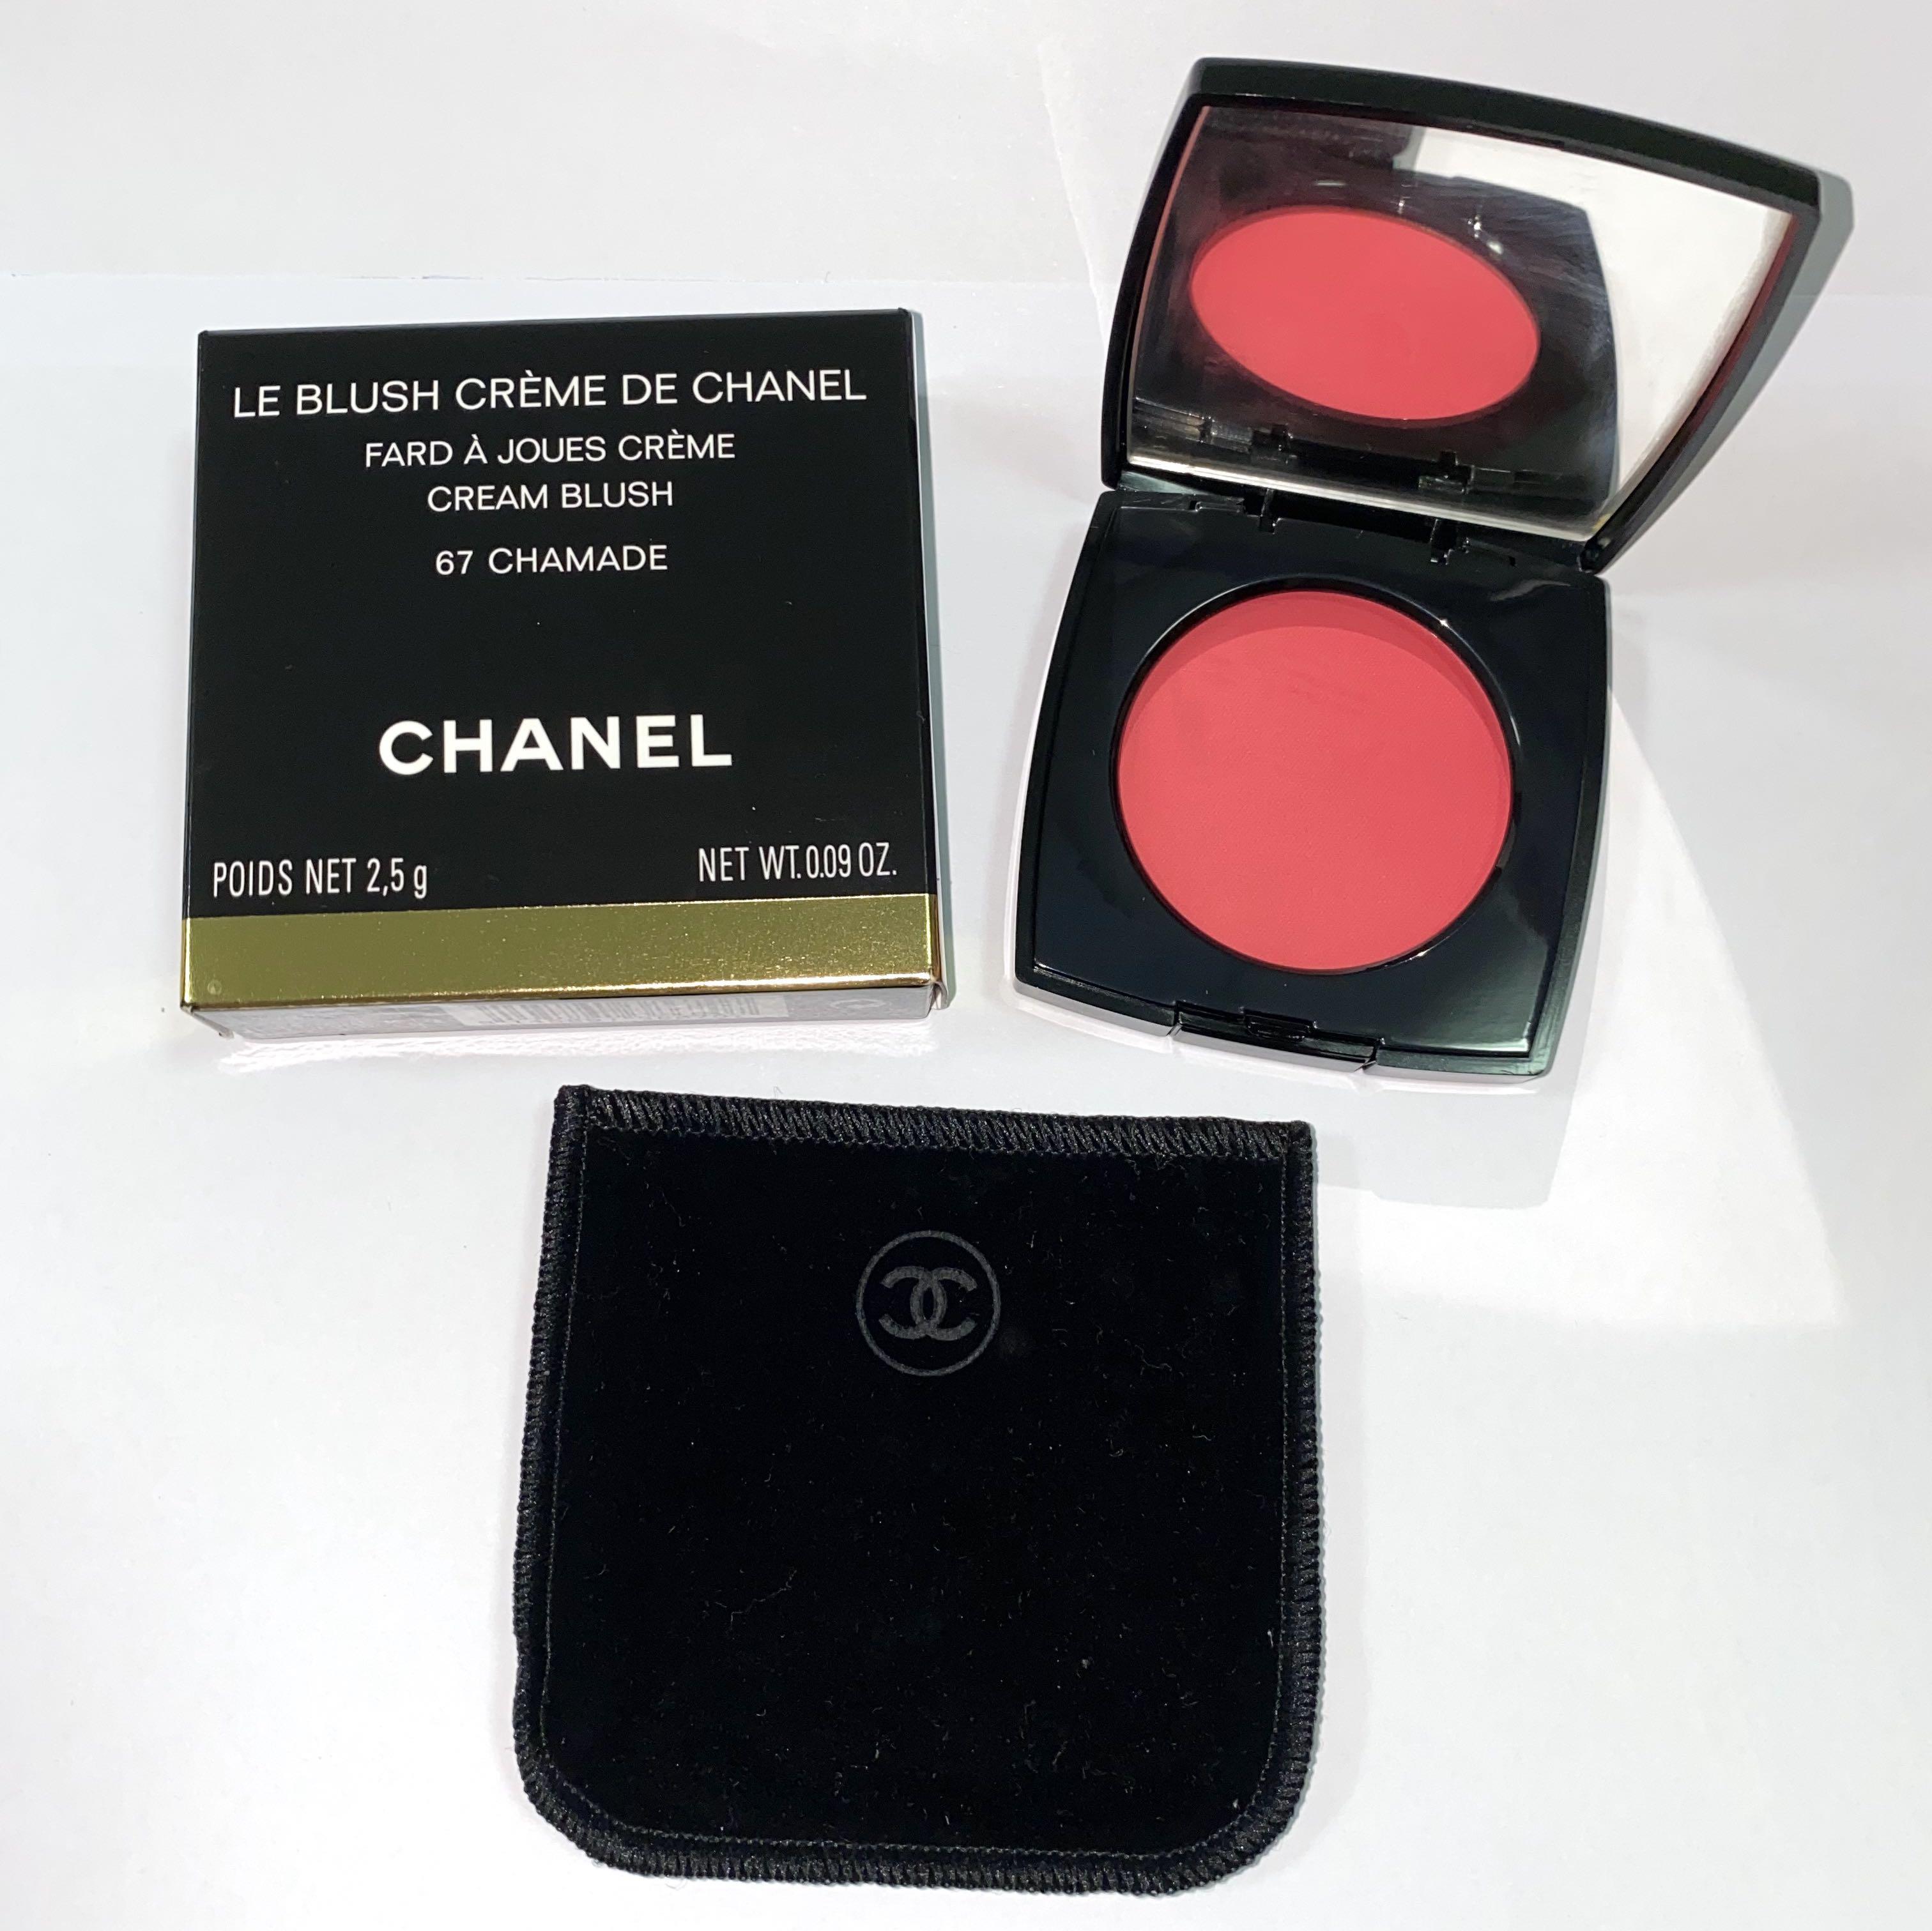 The NonBlonde Chanel Fall 2013 Le Blush Creme de Chanel Revelation